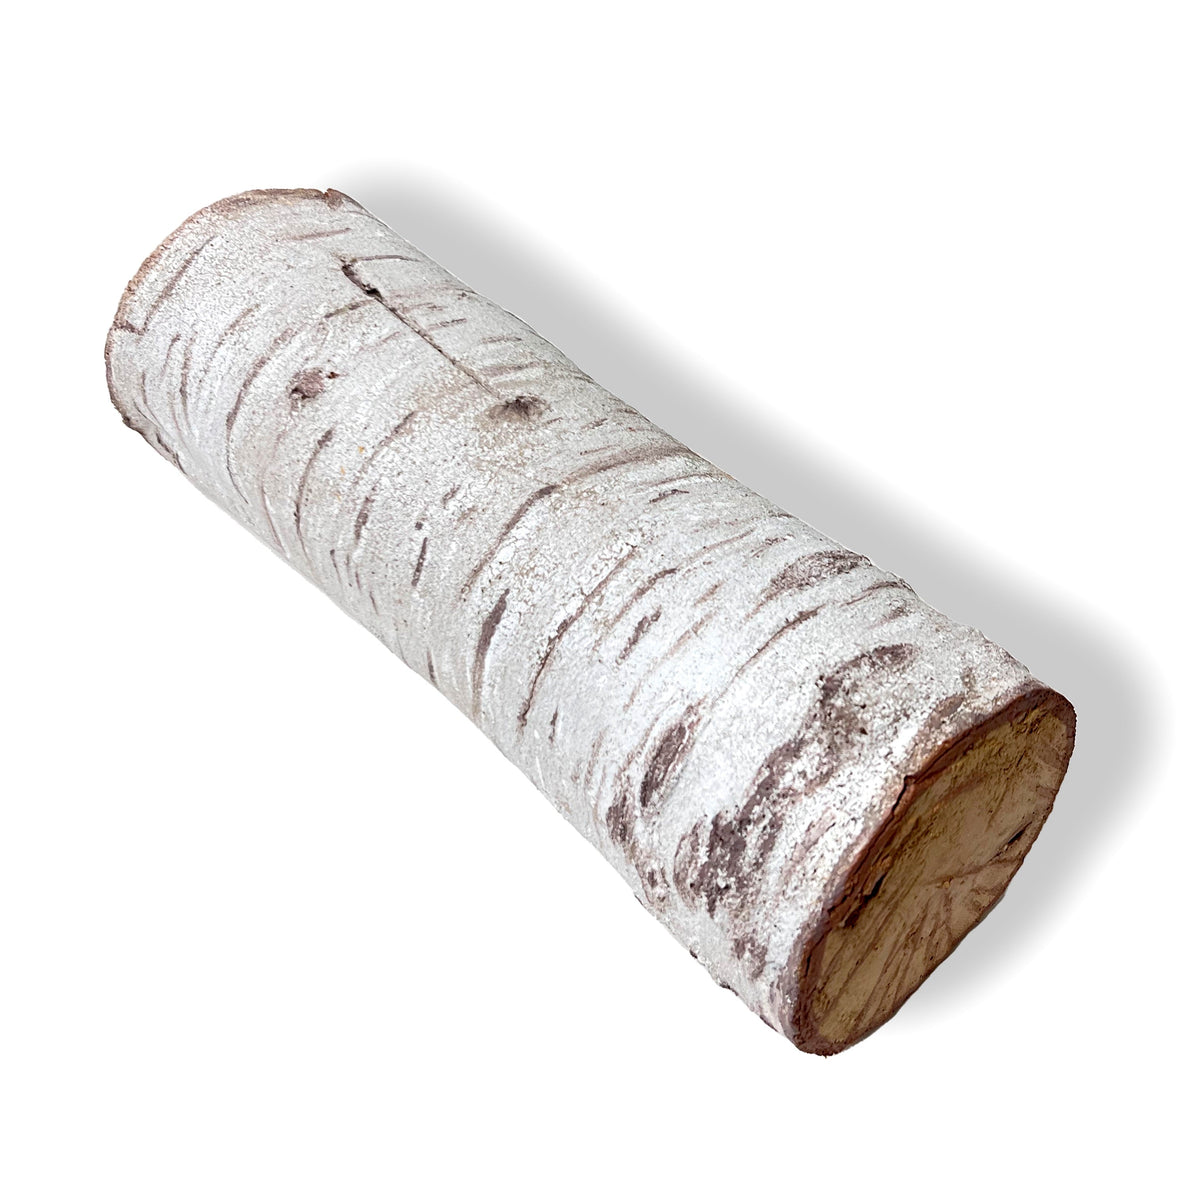 Foam Rubber Birch Log Prop - 12 Inches Long - Birch Finish